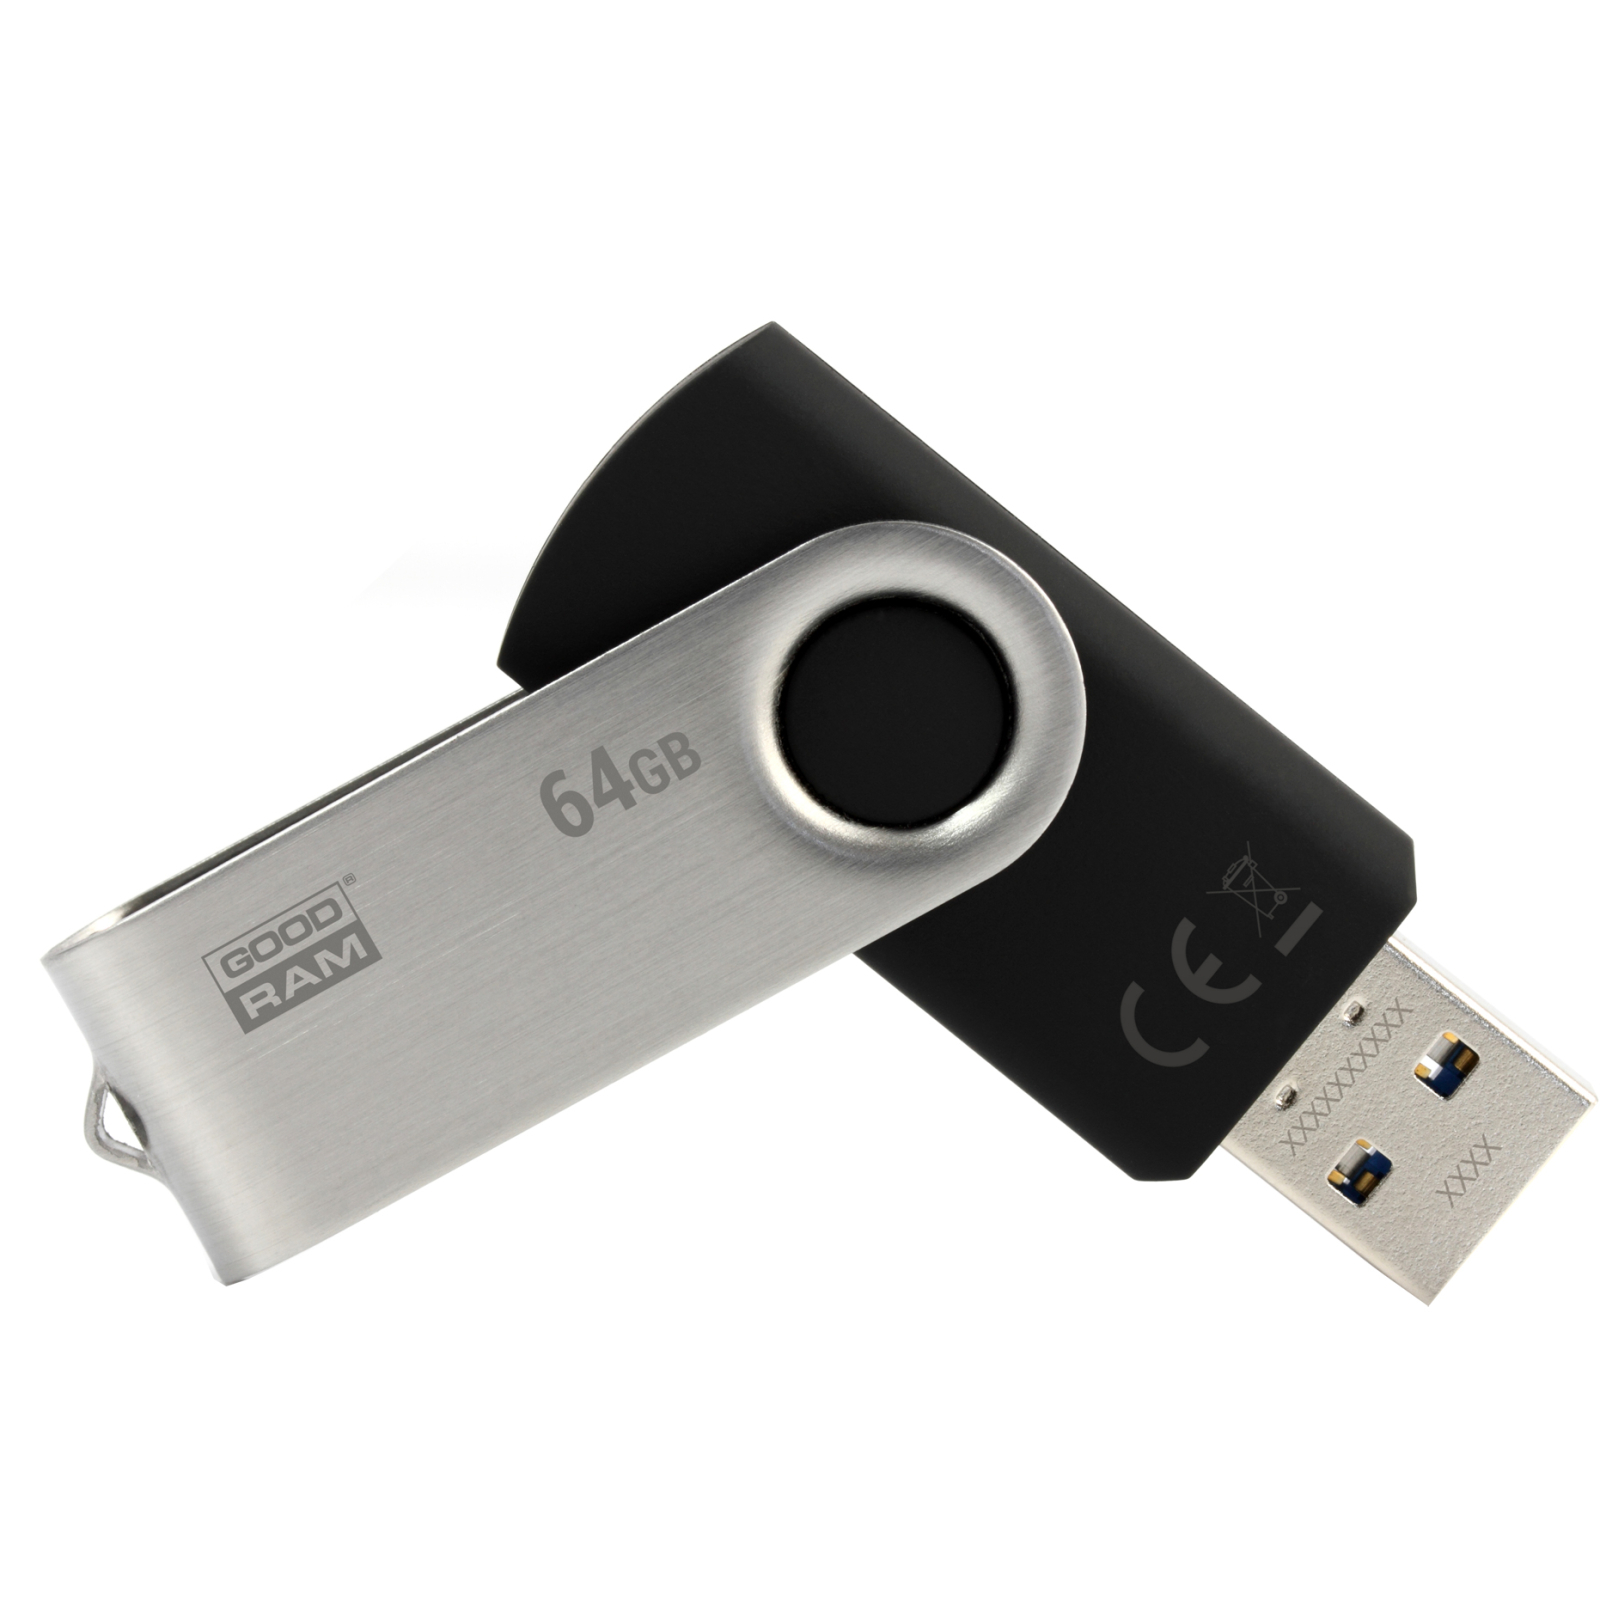 USB флеш накопитель Goodram 16GB Twister Black USB 2.0 (UTS2-0160K0R11)